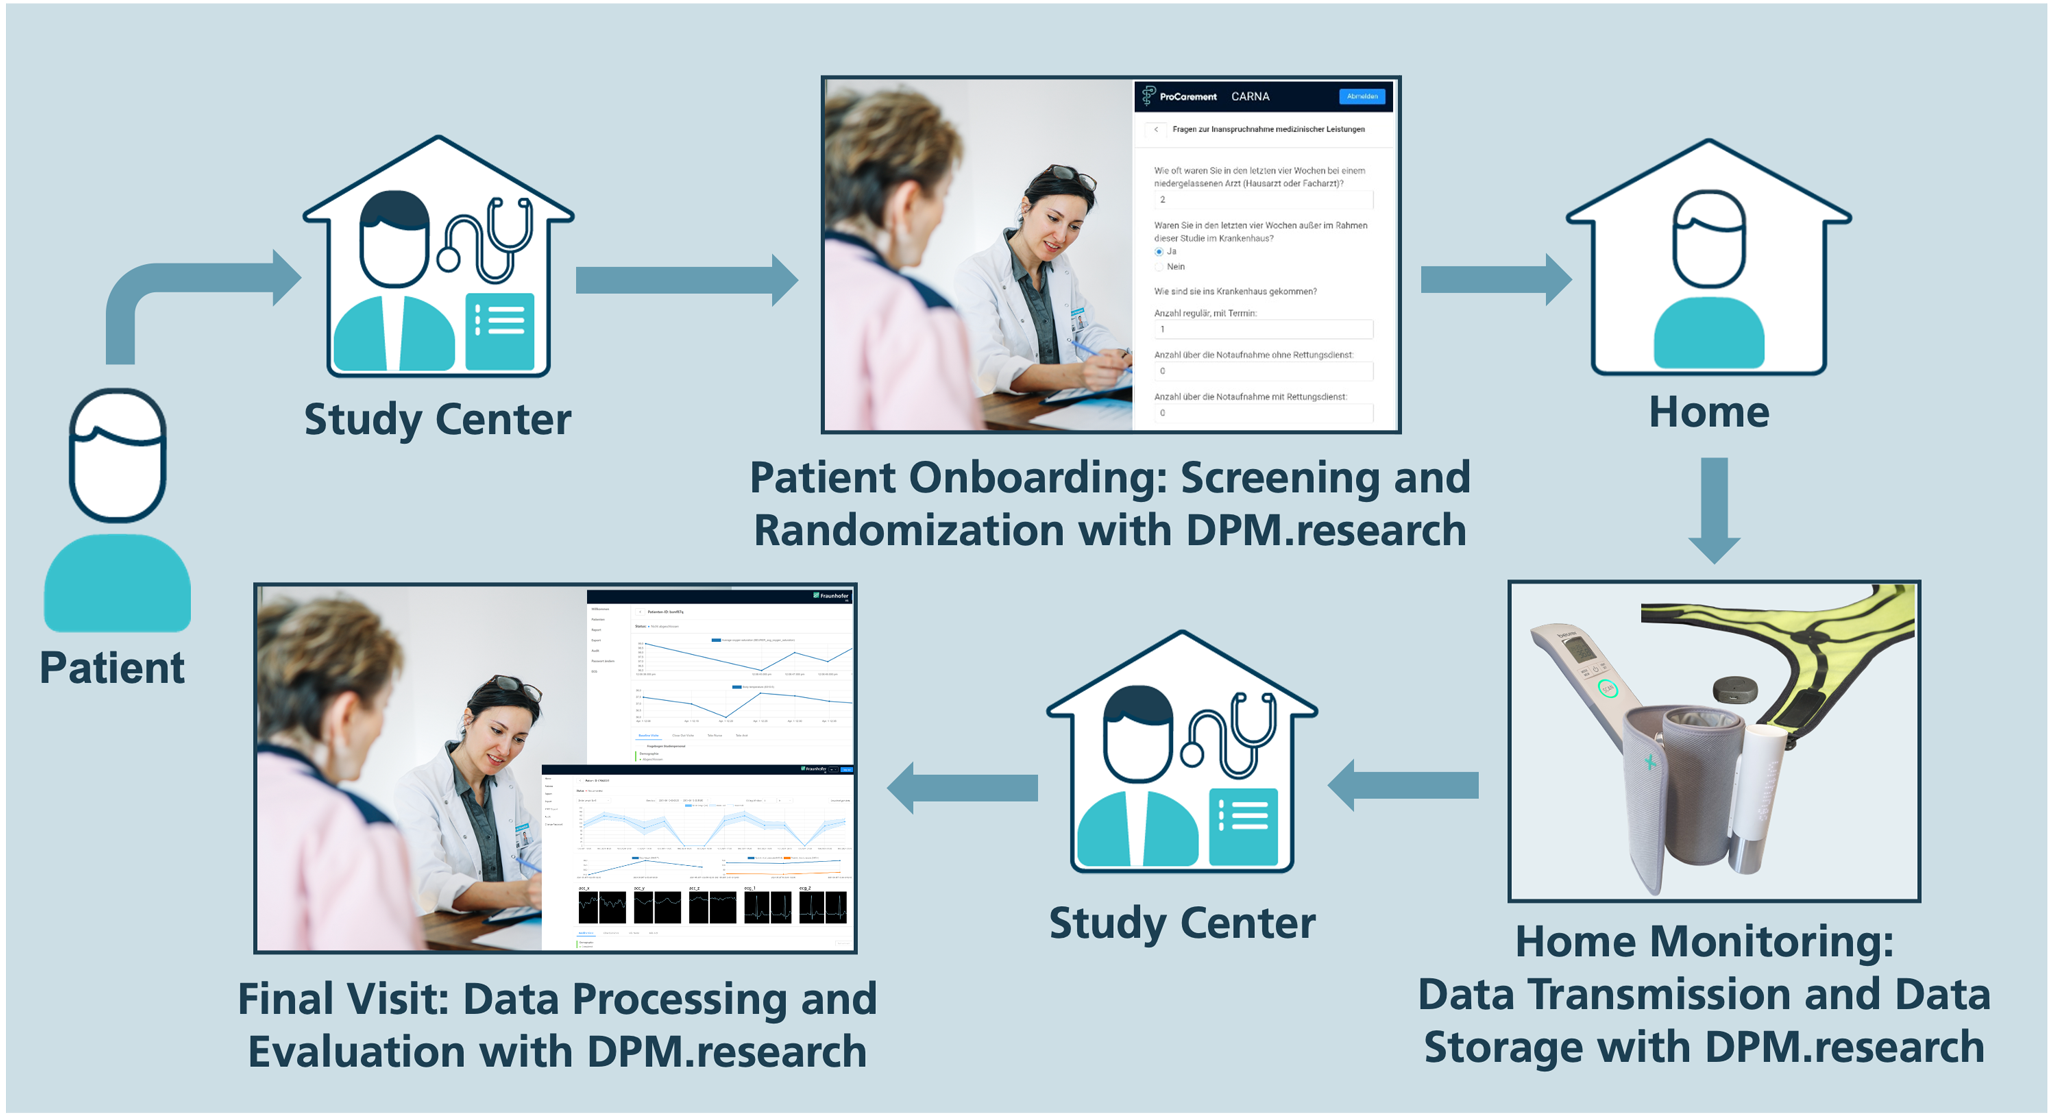 Grafische Darstellung des Ablaufs einer klinischen Studie auf Basis des Managementsystems DPM.research